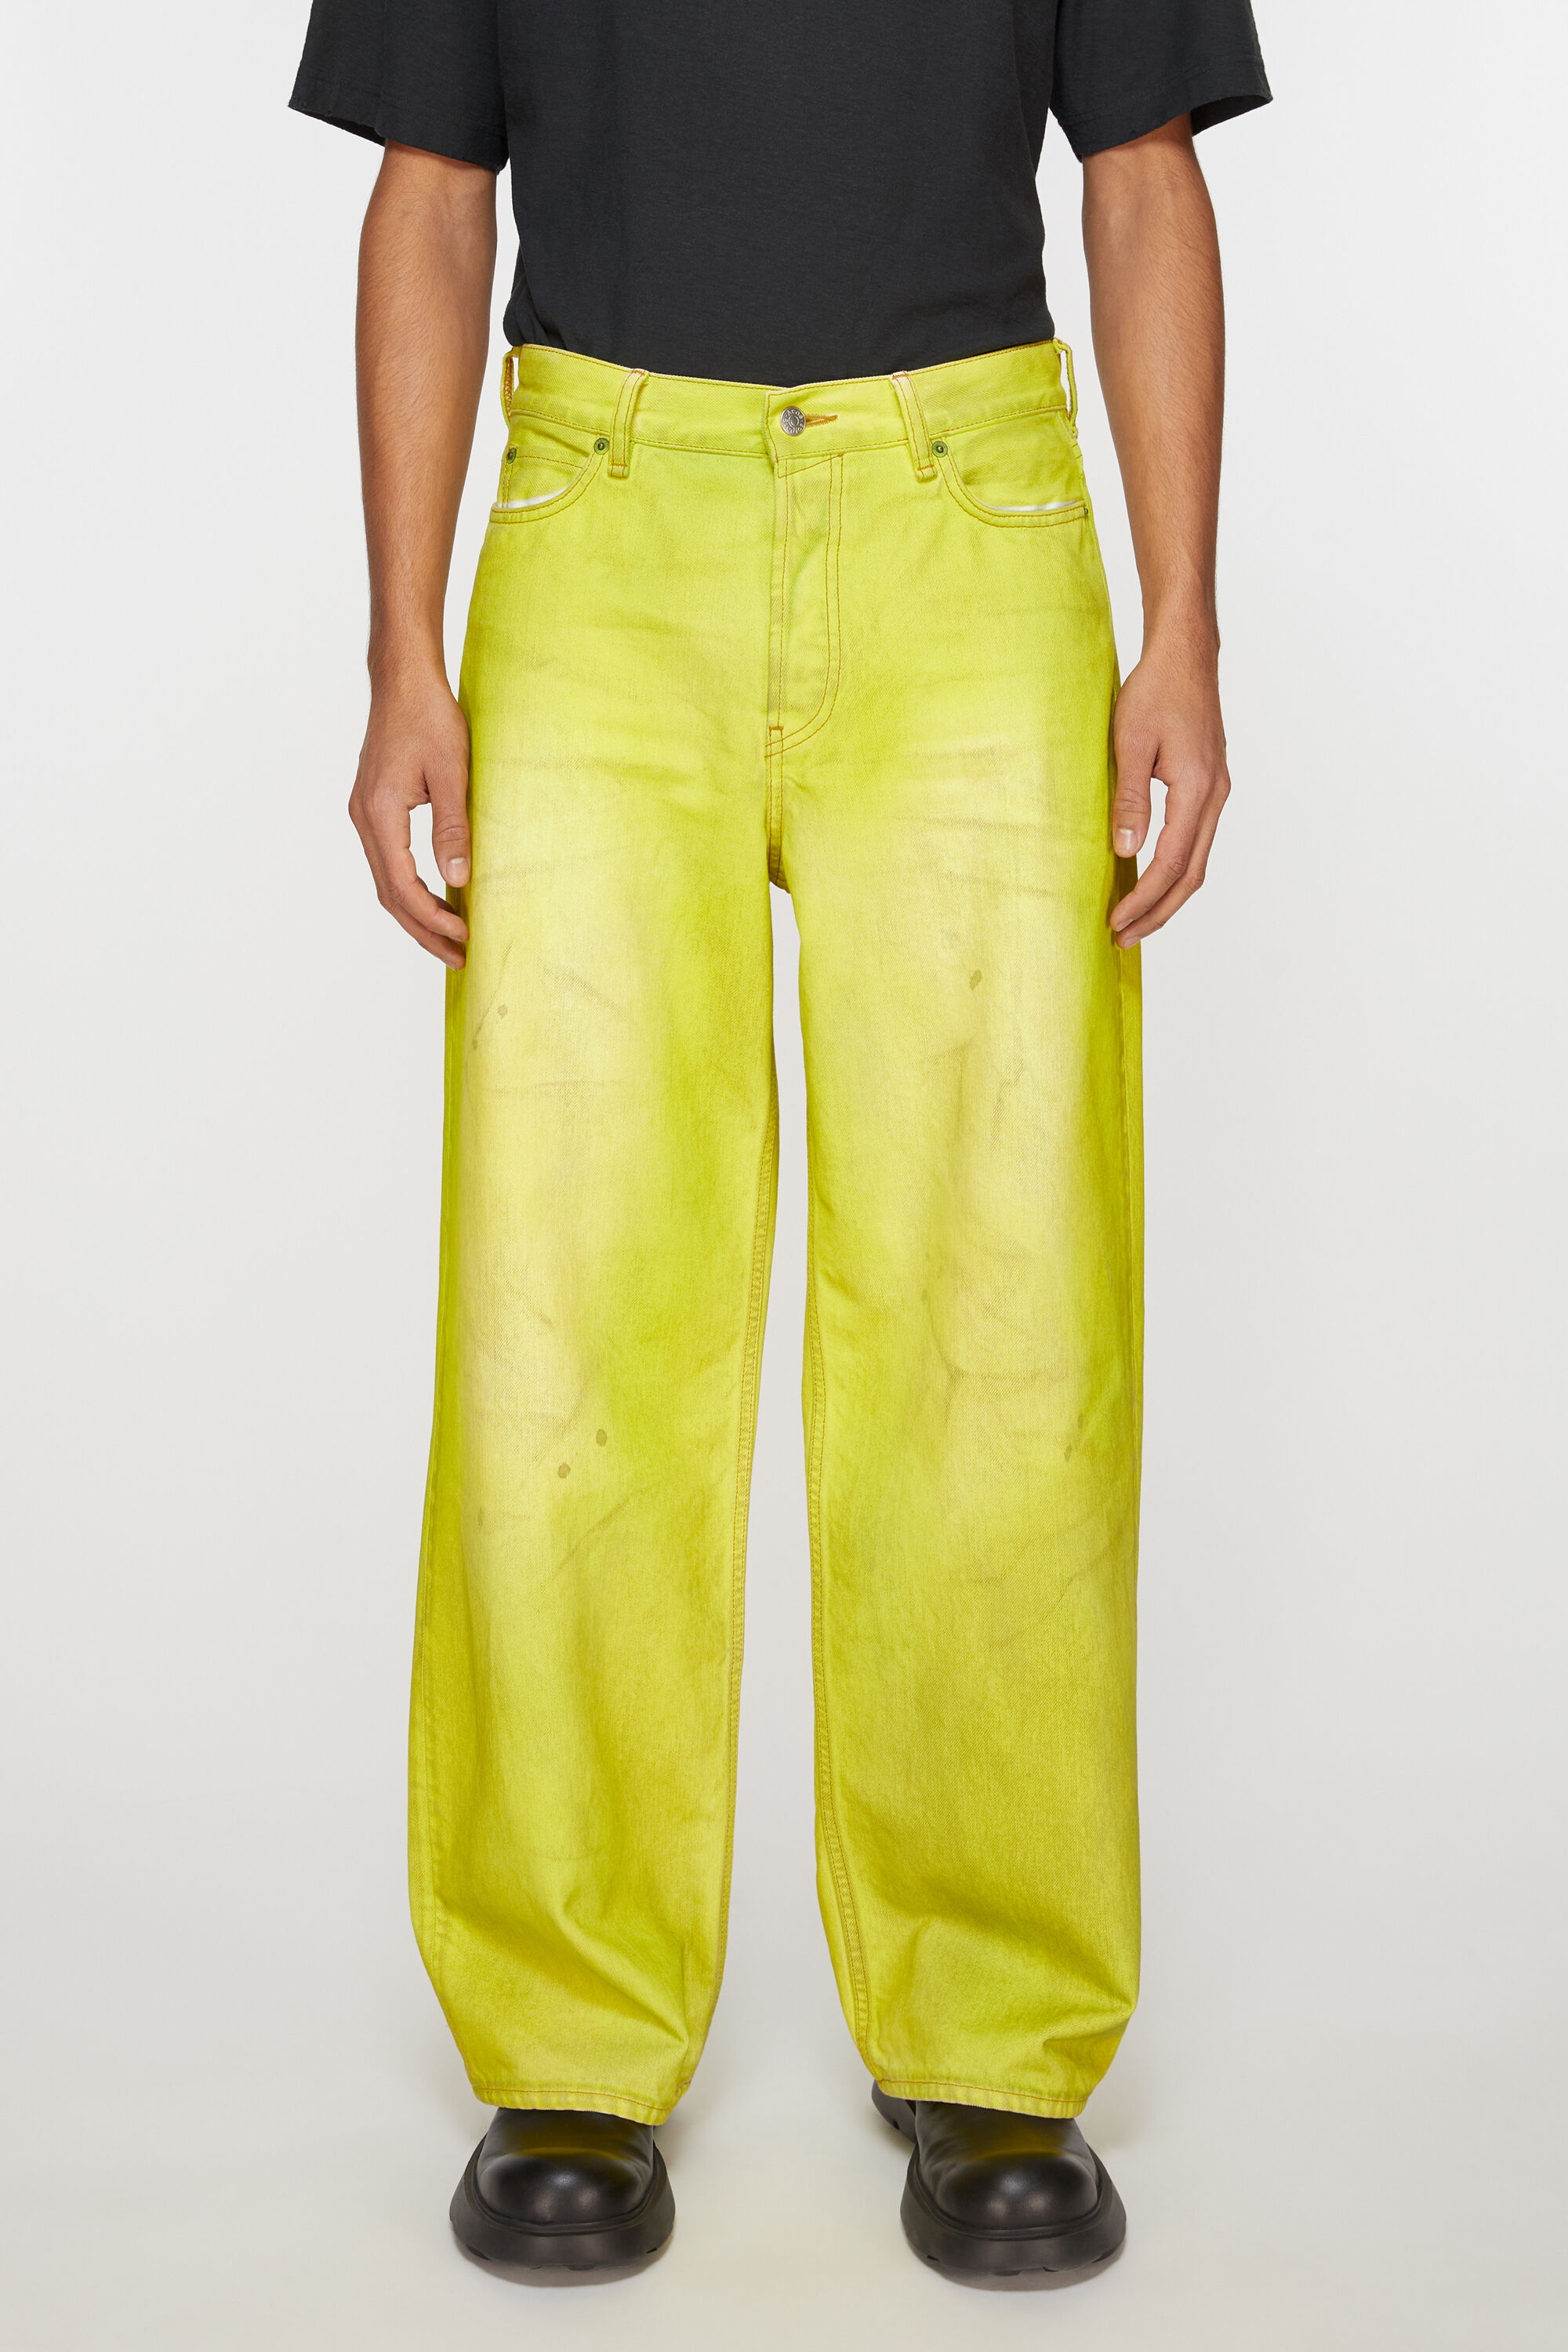 아크네 스튜디오 Acne Studios Loose fit jeans - 1981M - Neon yellow